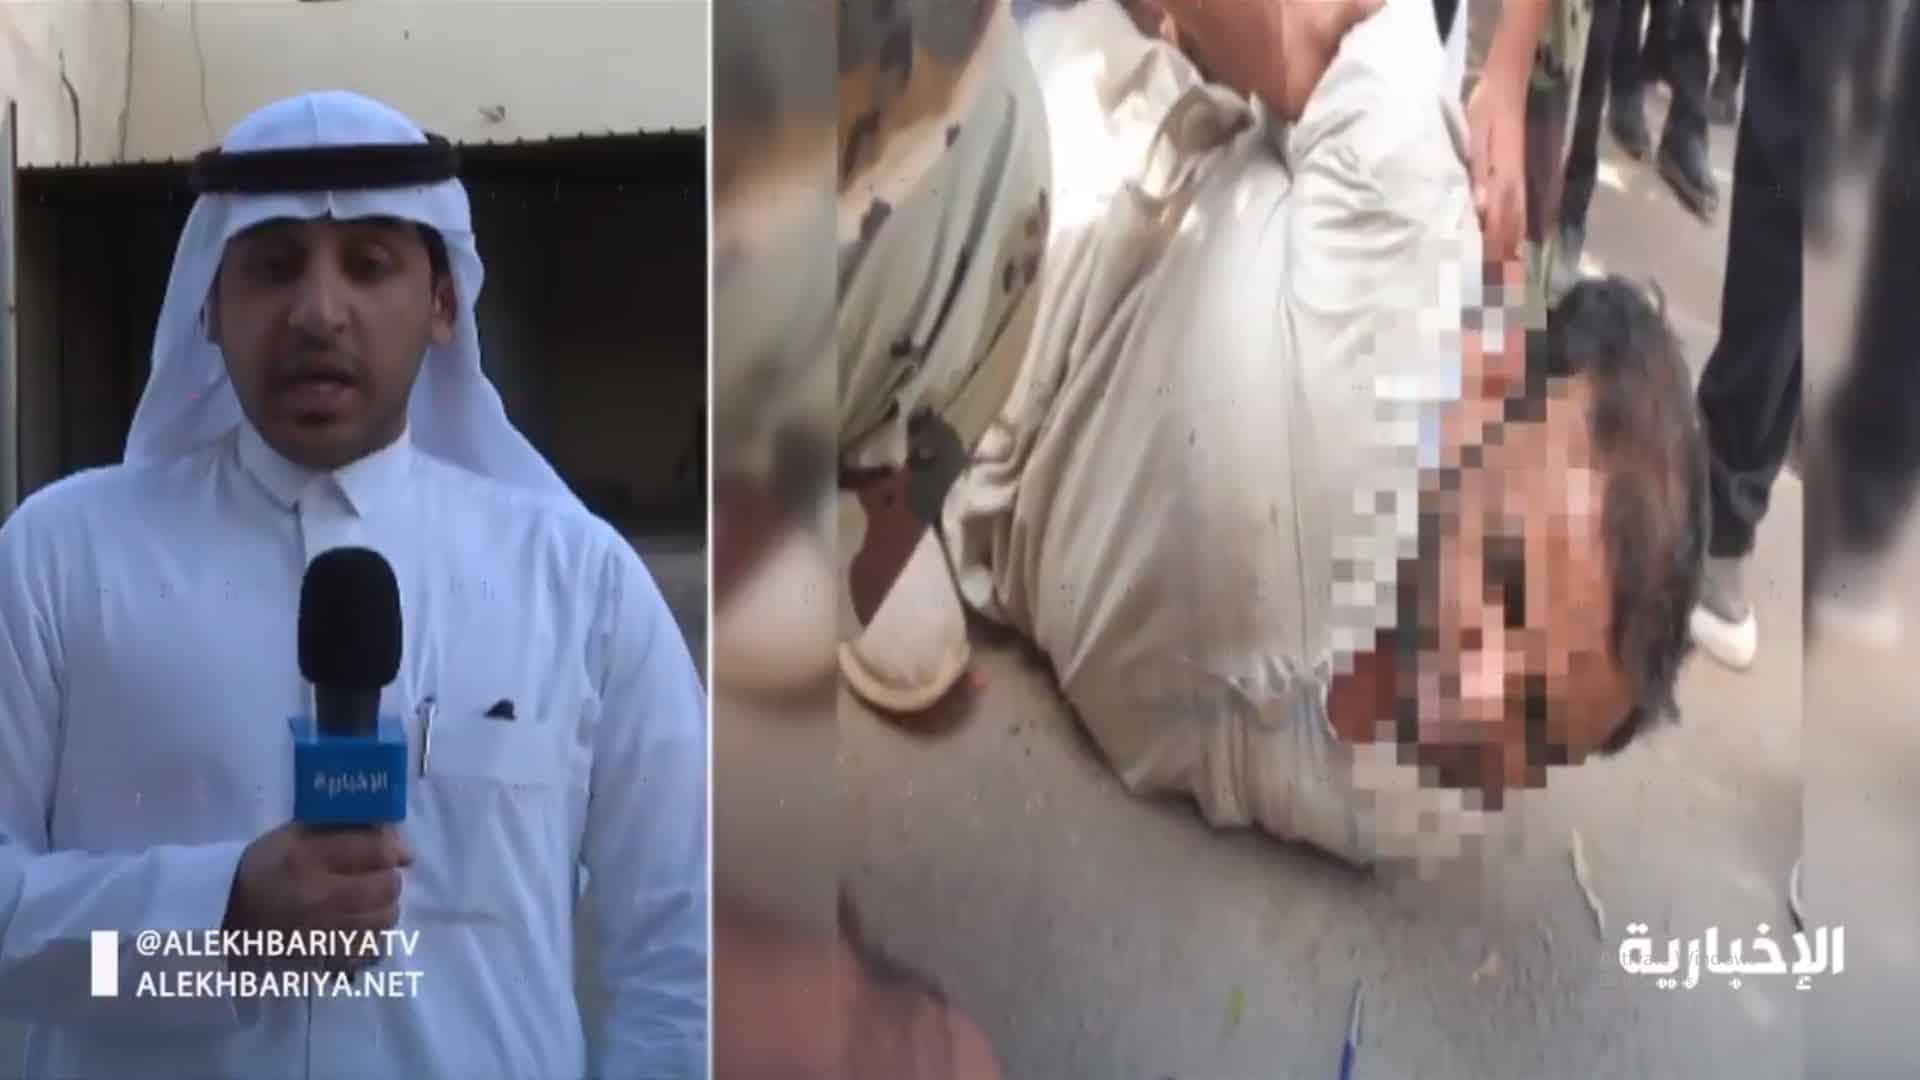 الإخبارية: إصابة مدير الدوريات الأمنية بالمدينة والجاني كان قناصًا